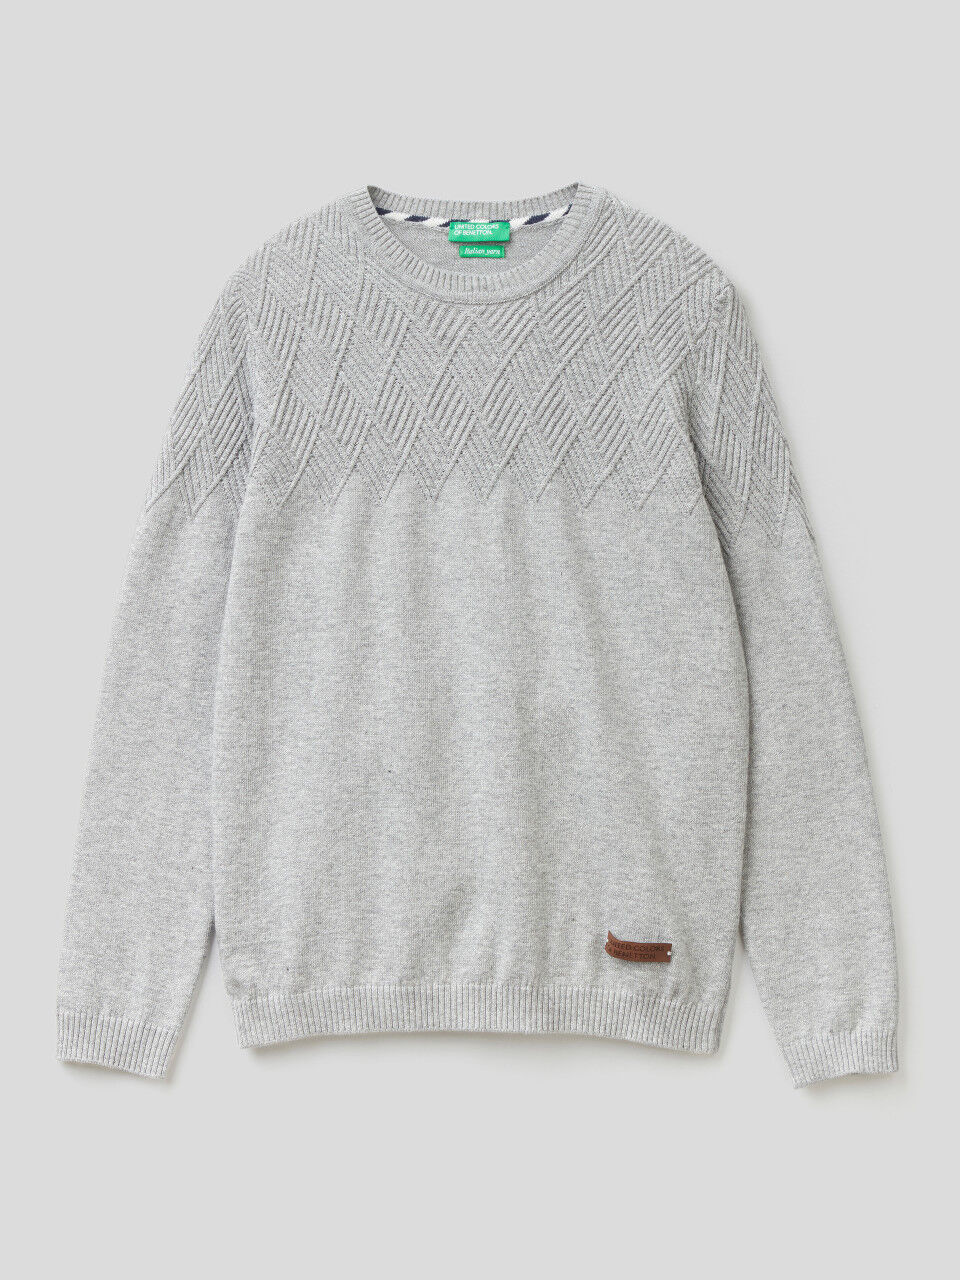 Sweater in wool blend